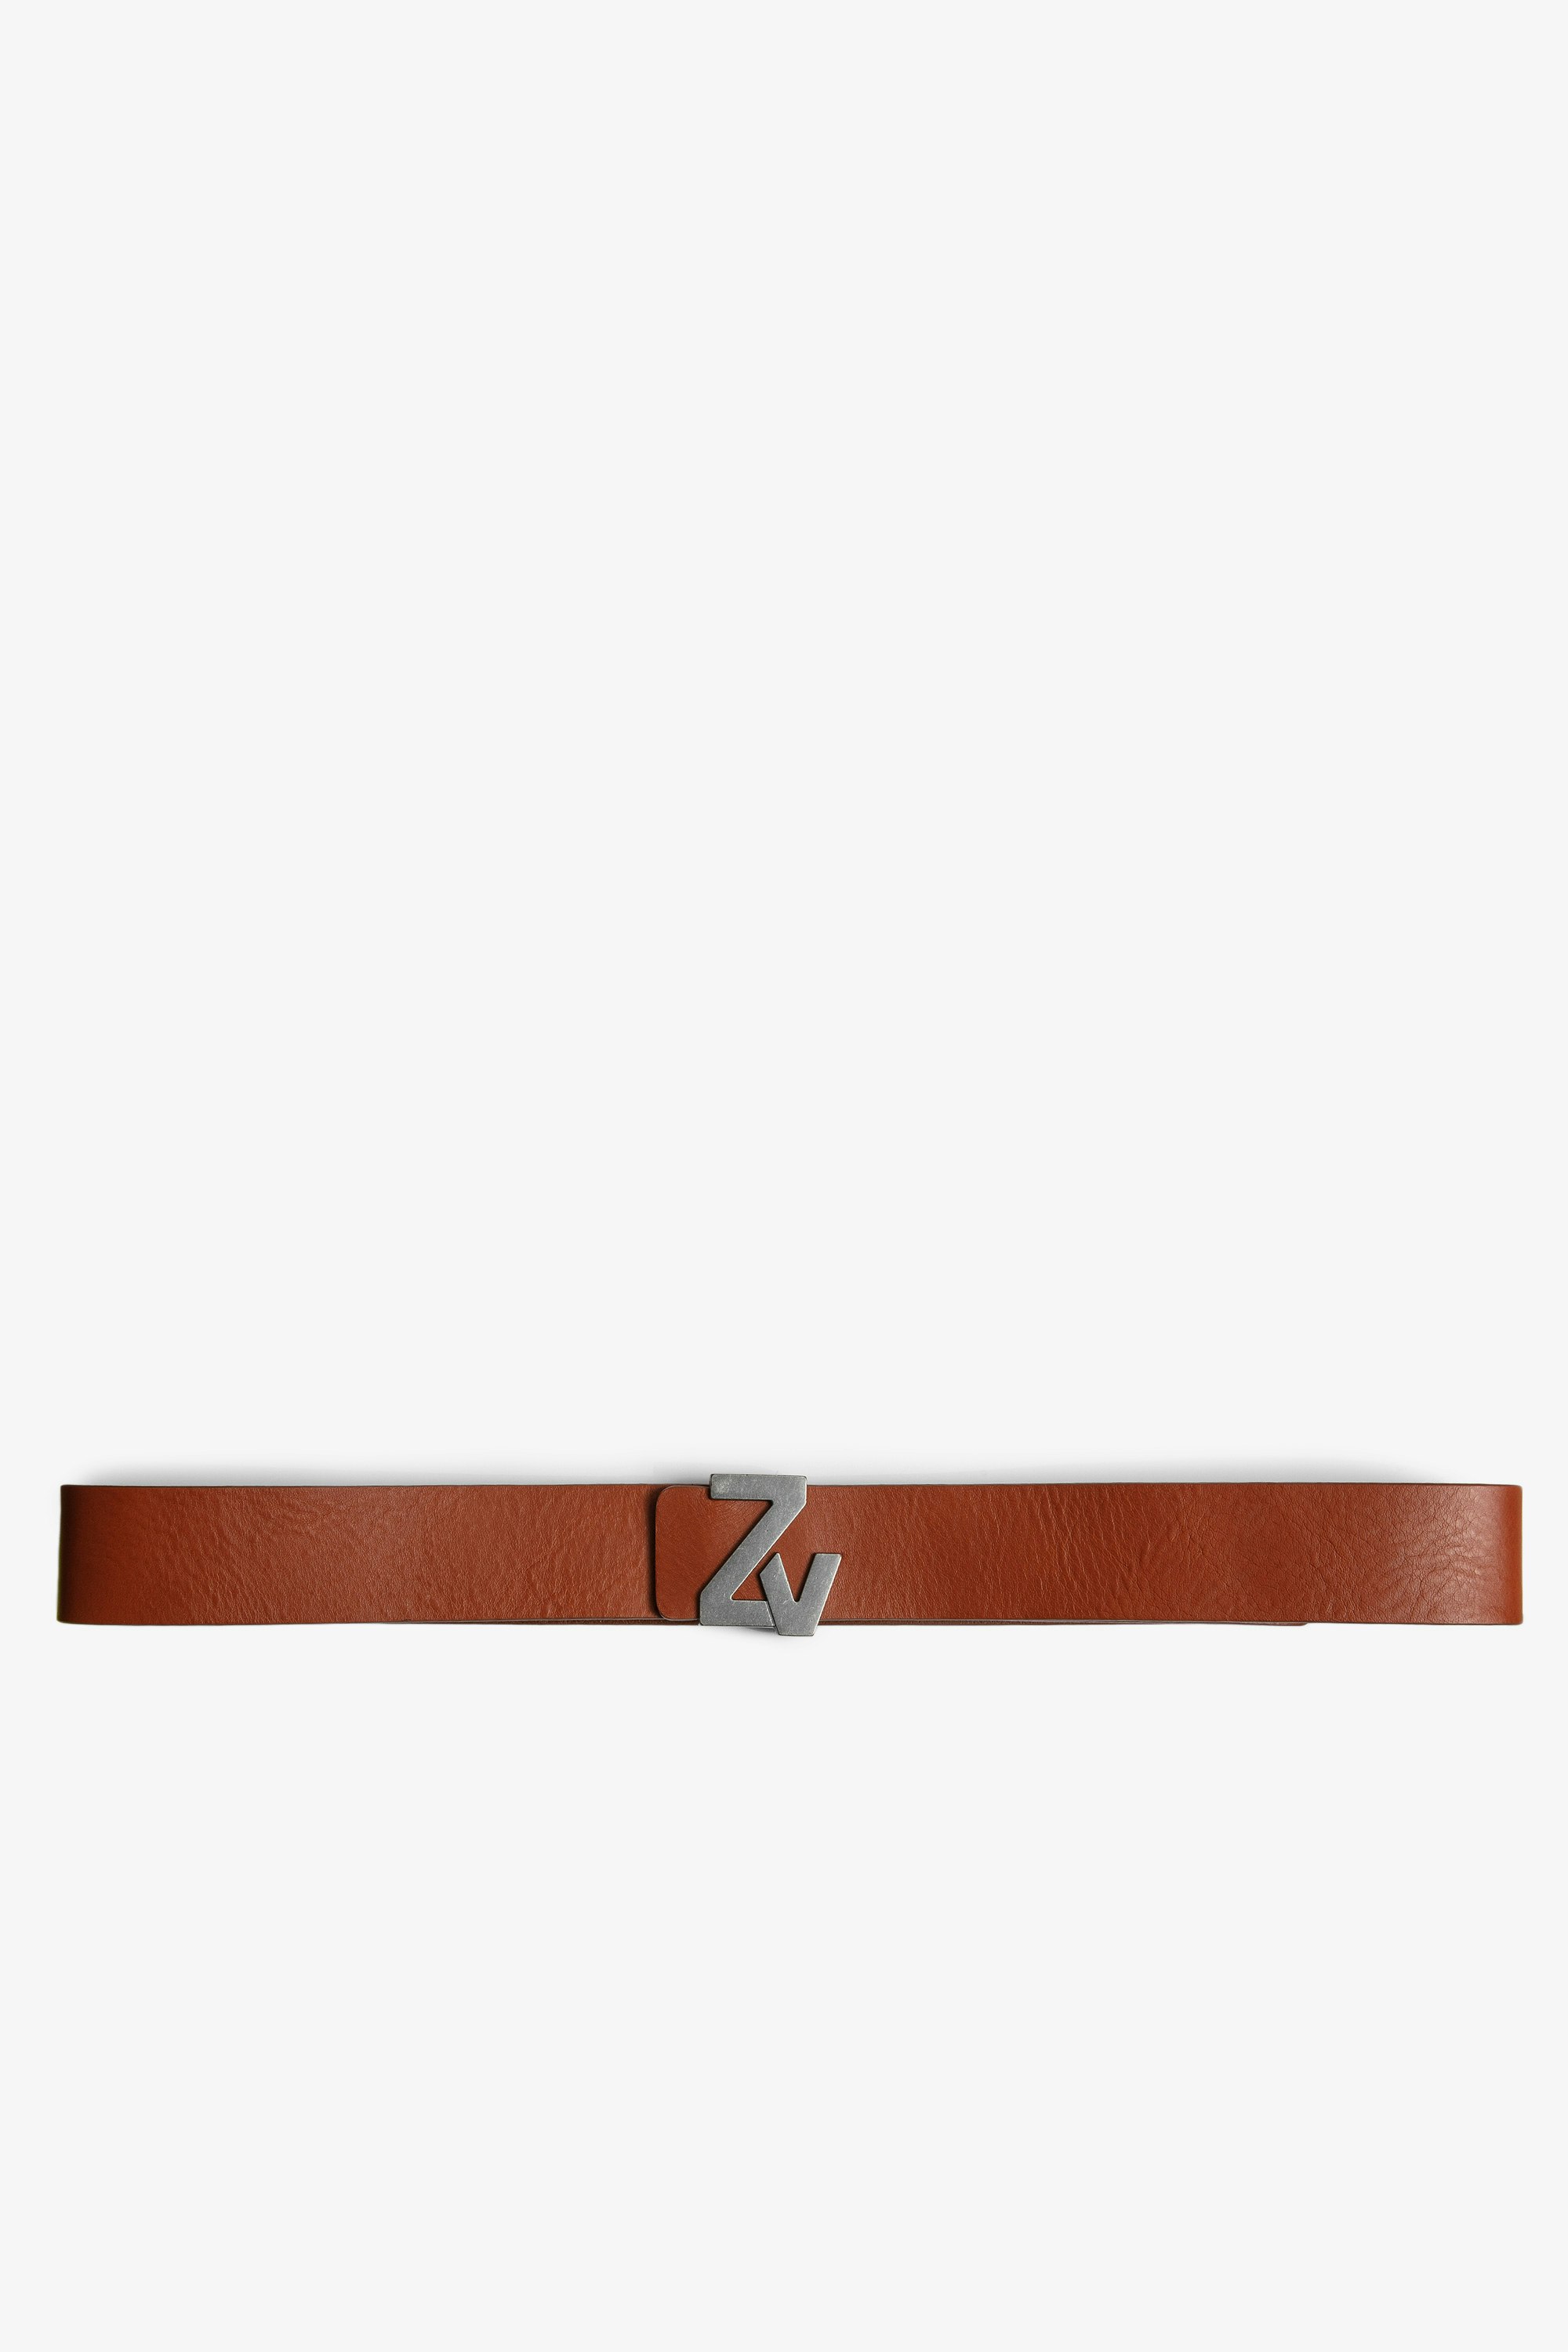 Cintura ZV Initiale La Belt Pelle - Cintura in pelle cognac con fibbia ZV uomo